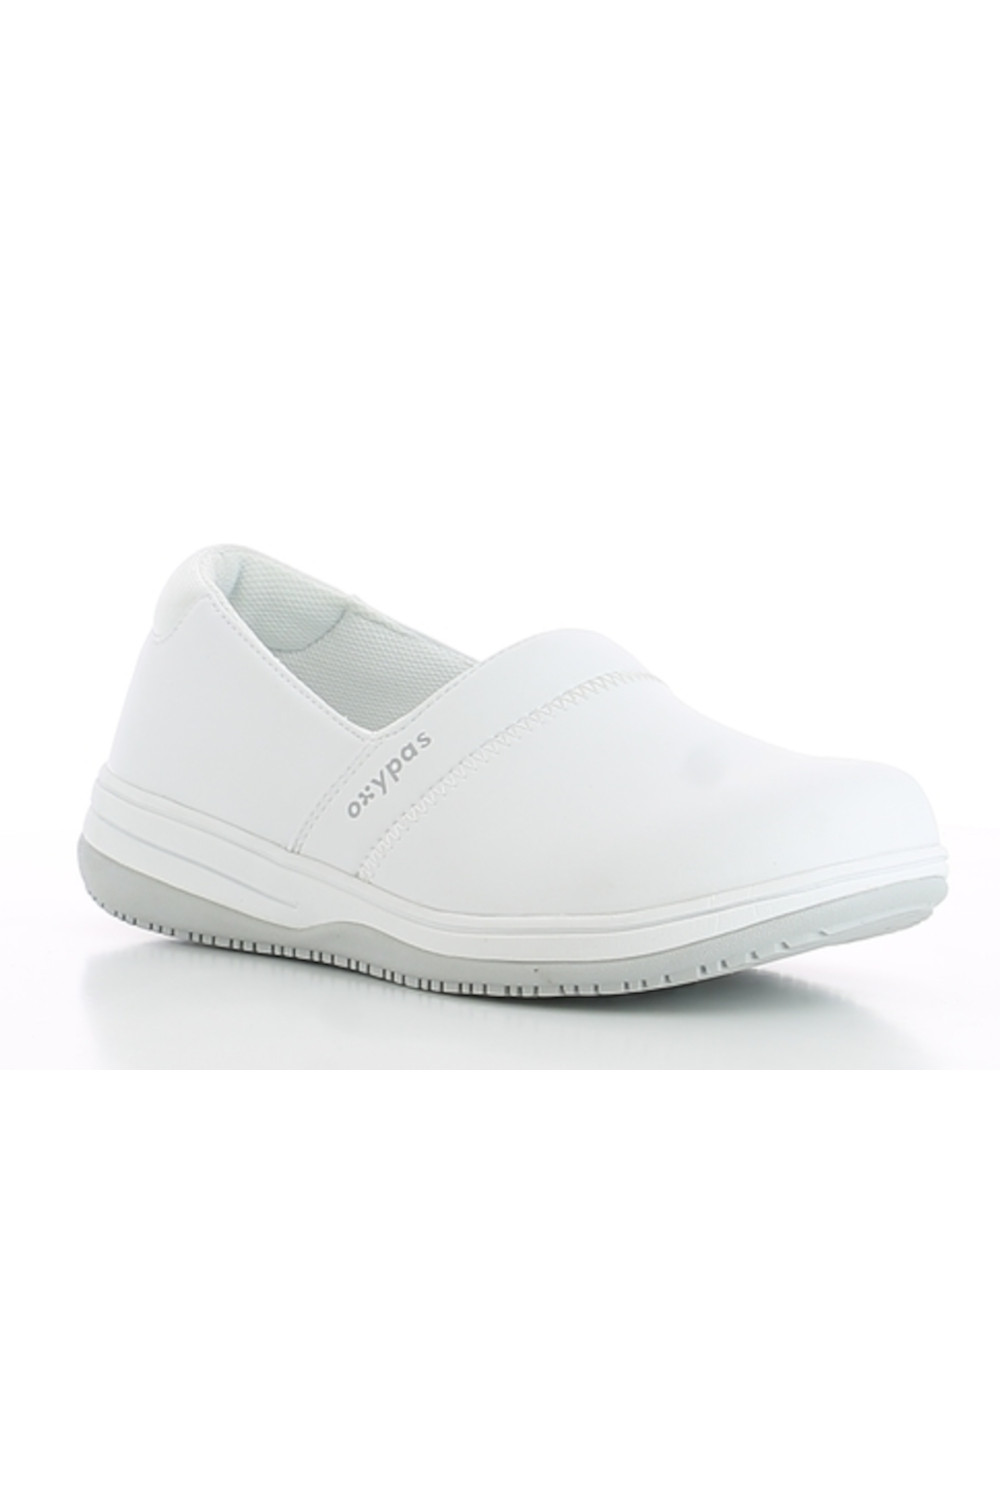 Buty damskie SUZY obuwie medyczne kolor biały